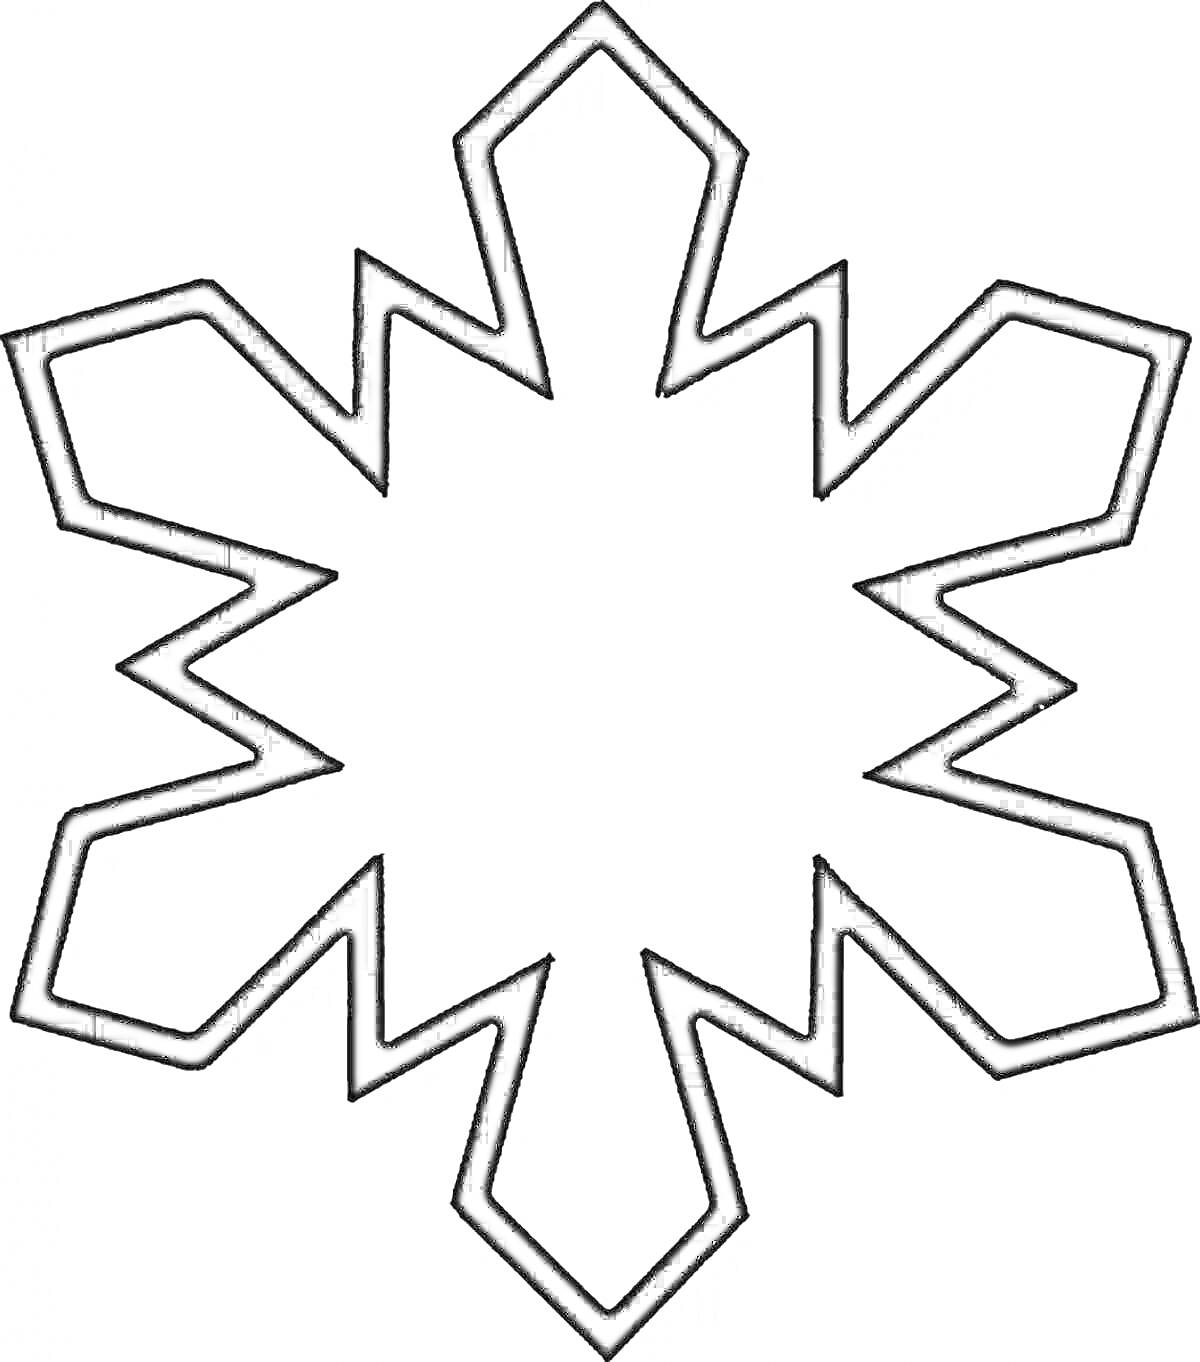 Раскраска Снежинка с шестиугольными лучами